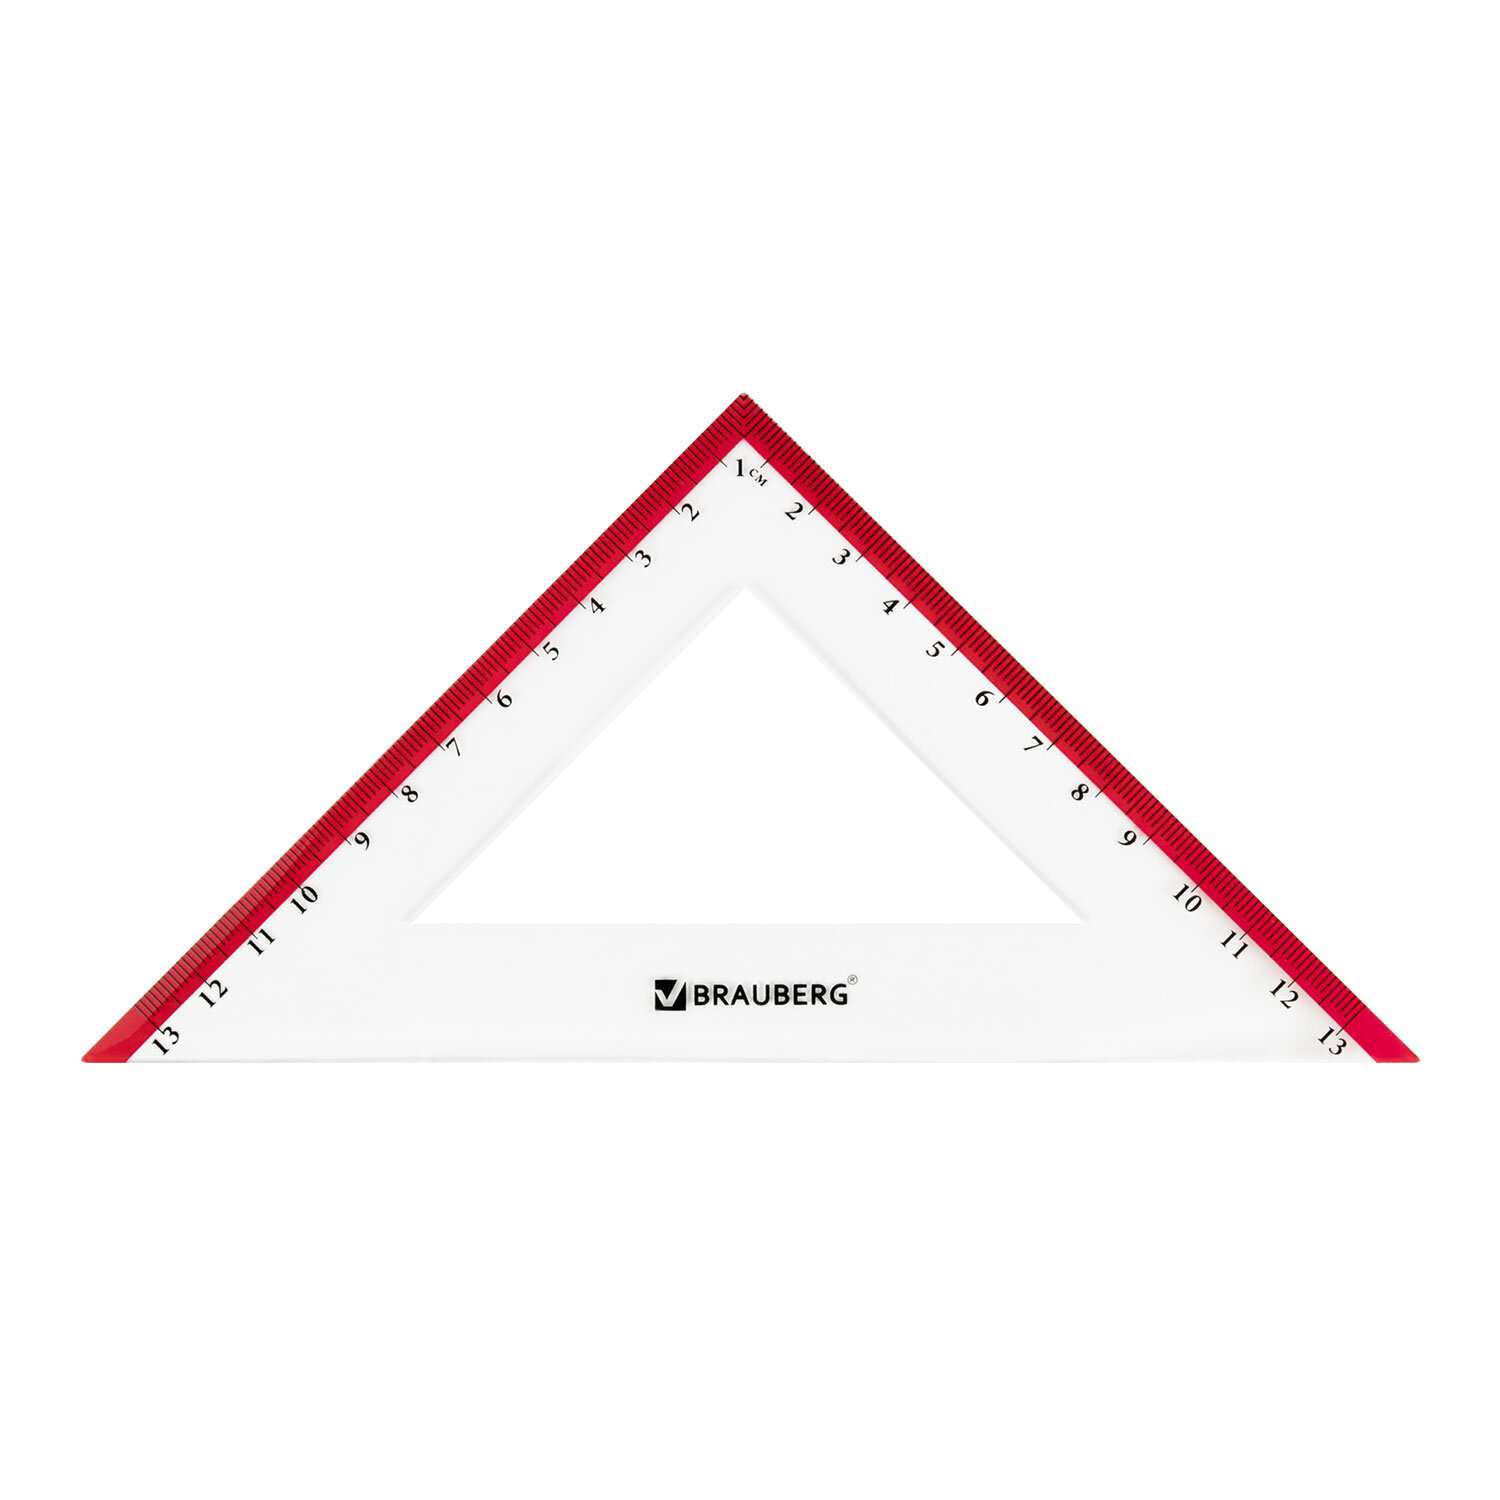 Чертежный набор Brauberg для школы по геометрии большой линейка 30 см 2 треугольника и транспортир - фото 6